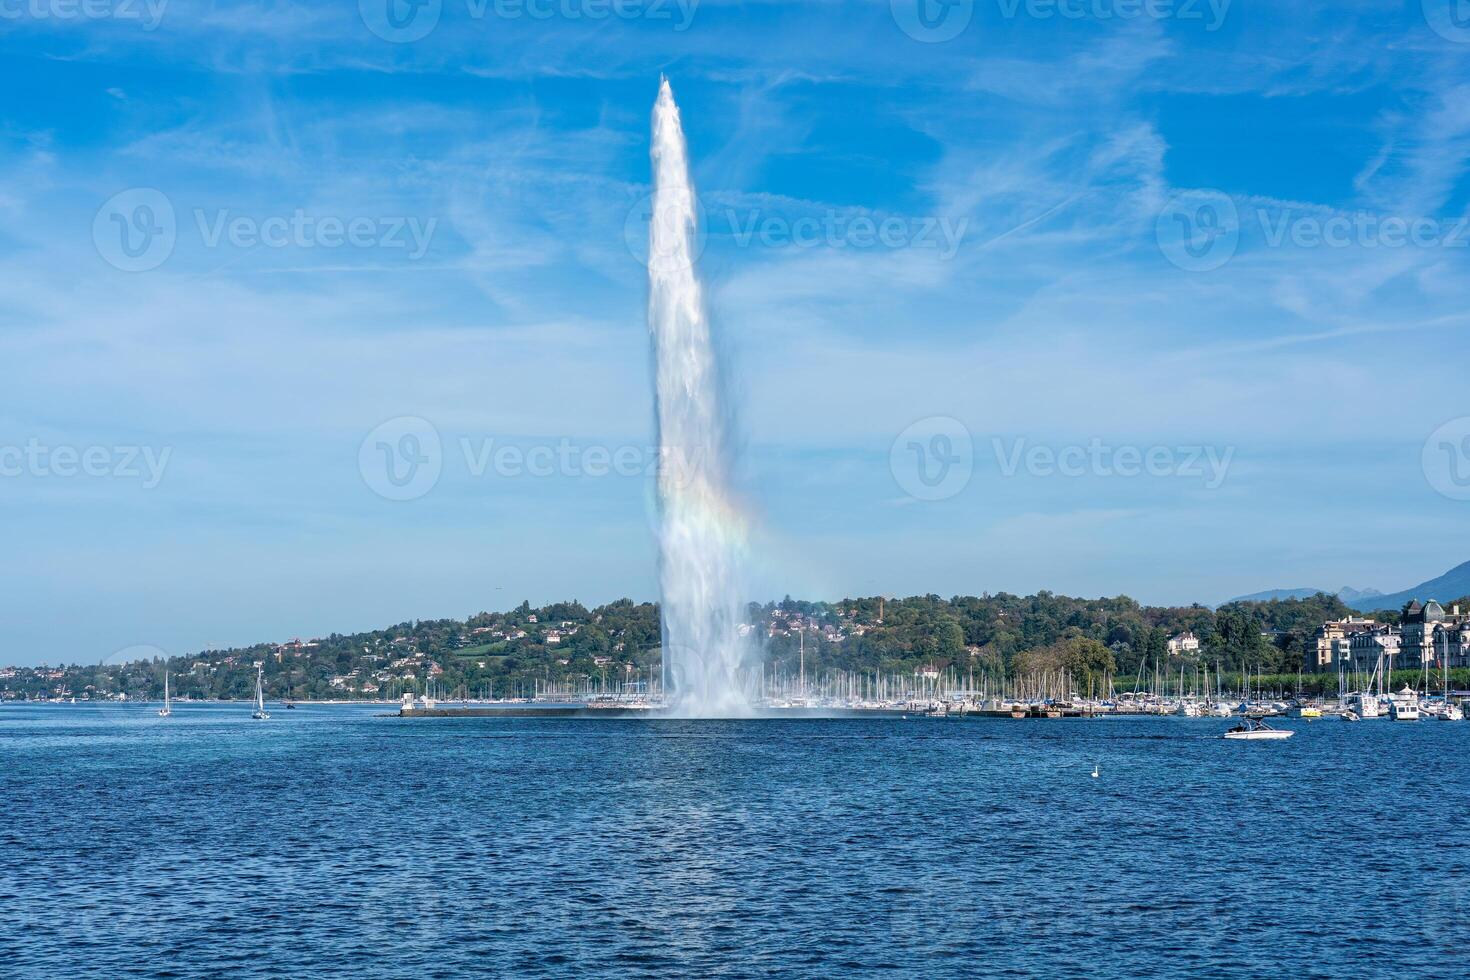 de Jet d'eau mijlpaal groot fontein met regenboog in Genève, Zwitserland foto